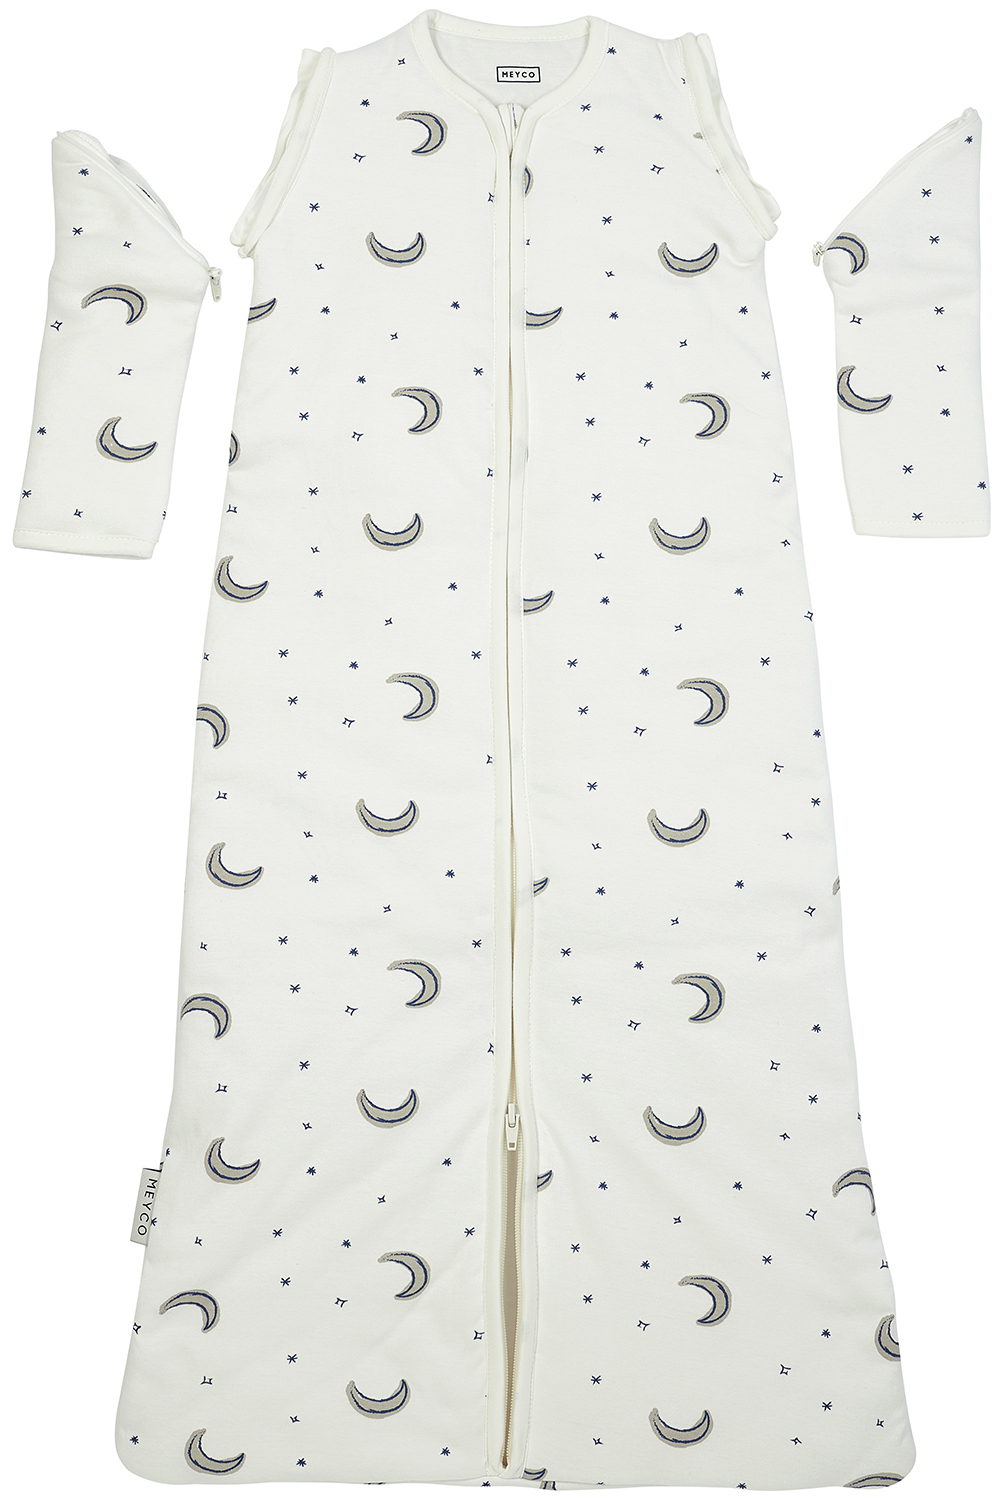 Babyschlafsack mit abnehmbaren Ärmeln Moon - indigo - 110cm